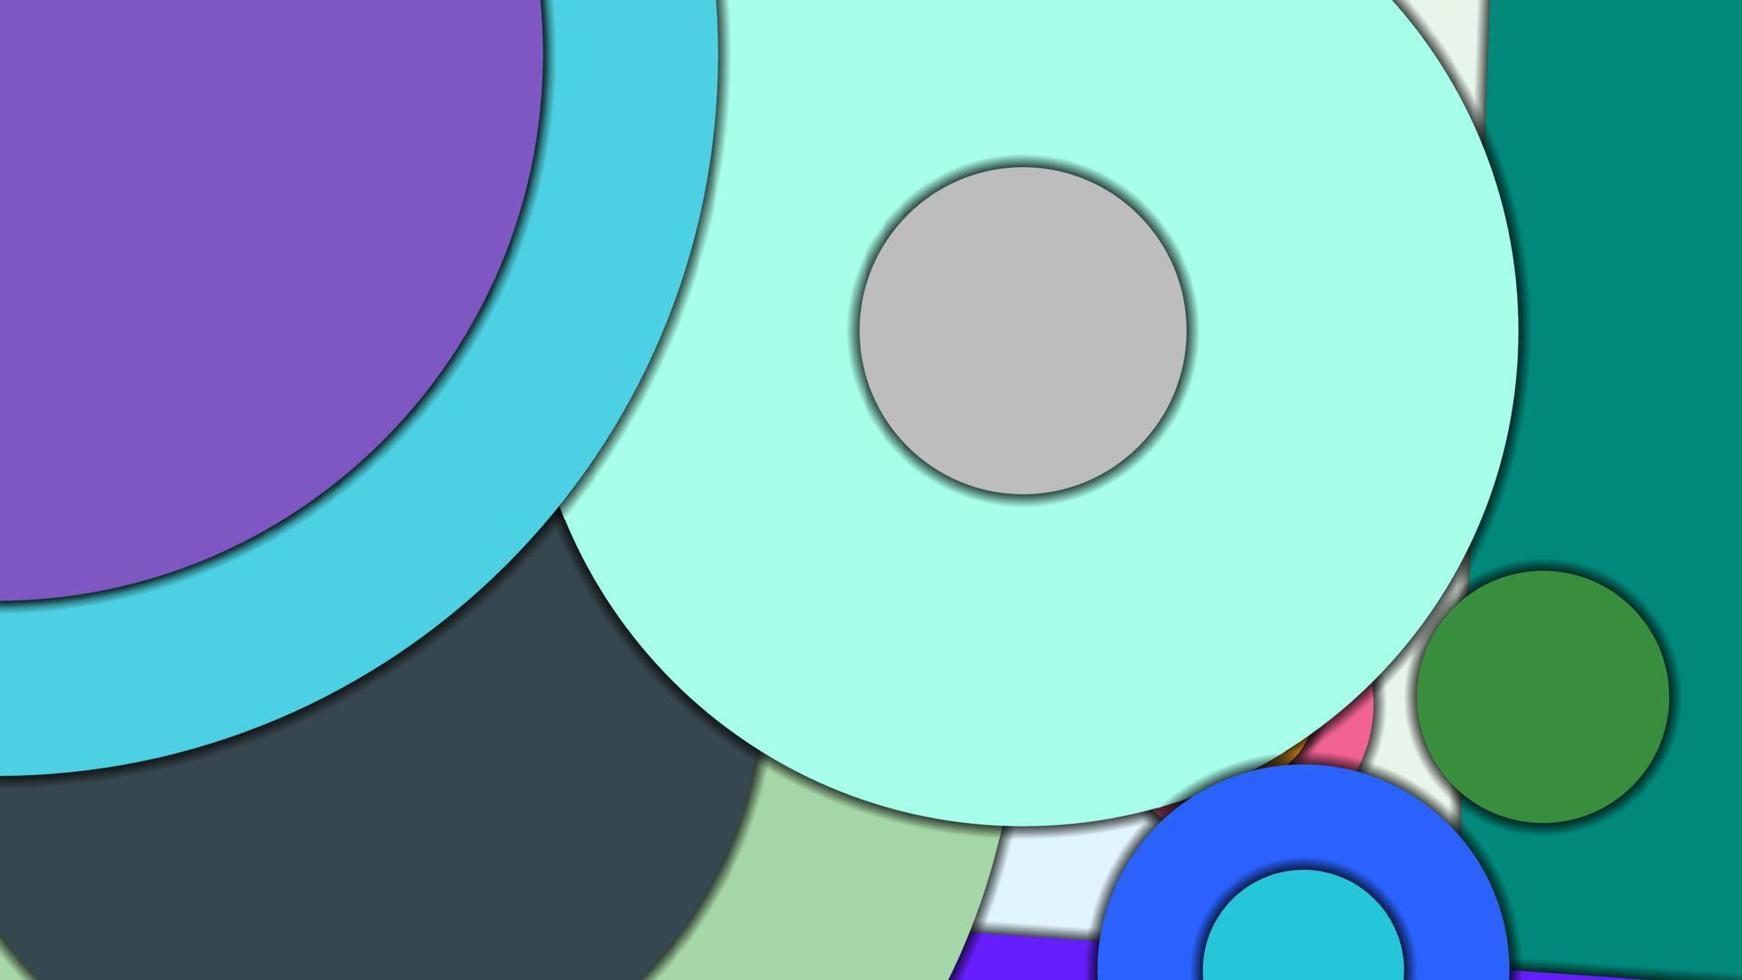 abstrato geométrico vetorial colorido em estilo de design de material com círculos concêntricos e retângulos girados com sombras, imitando papel cortado. vetor